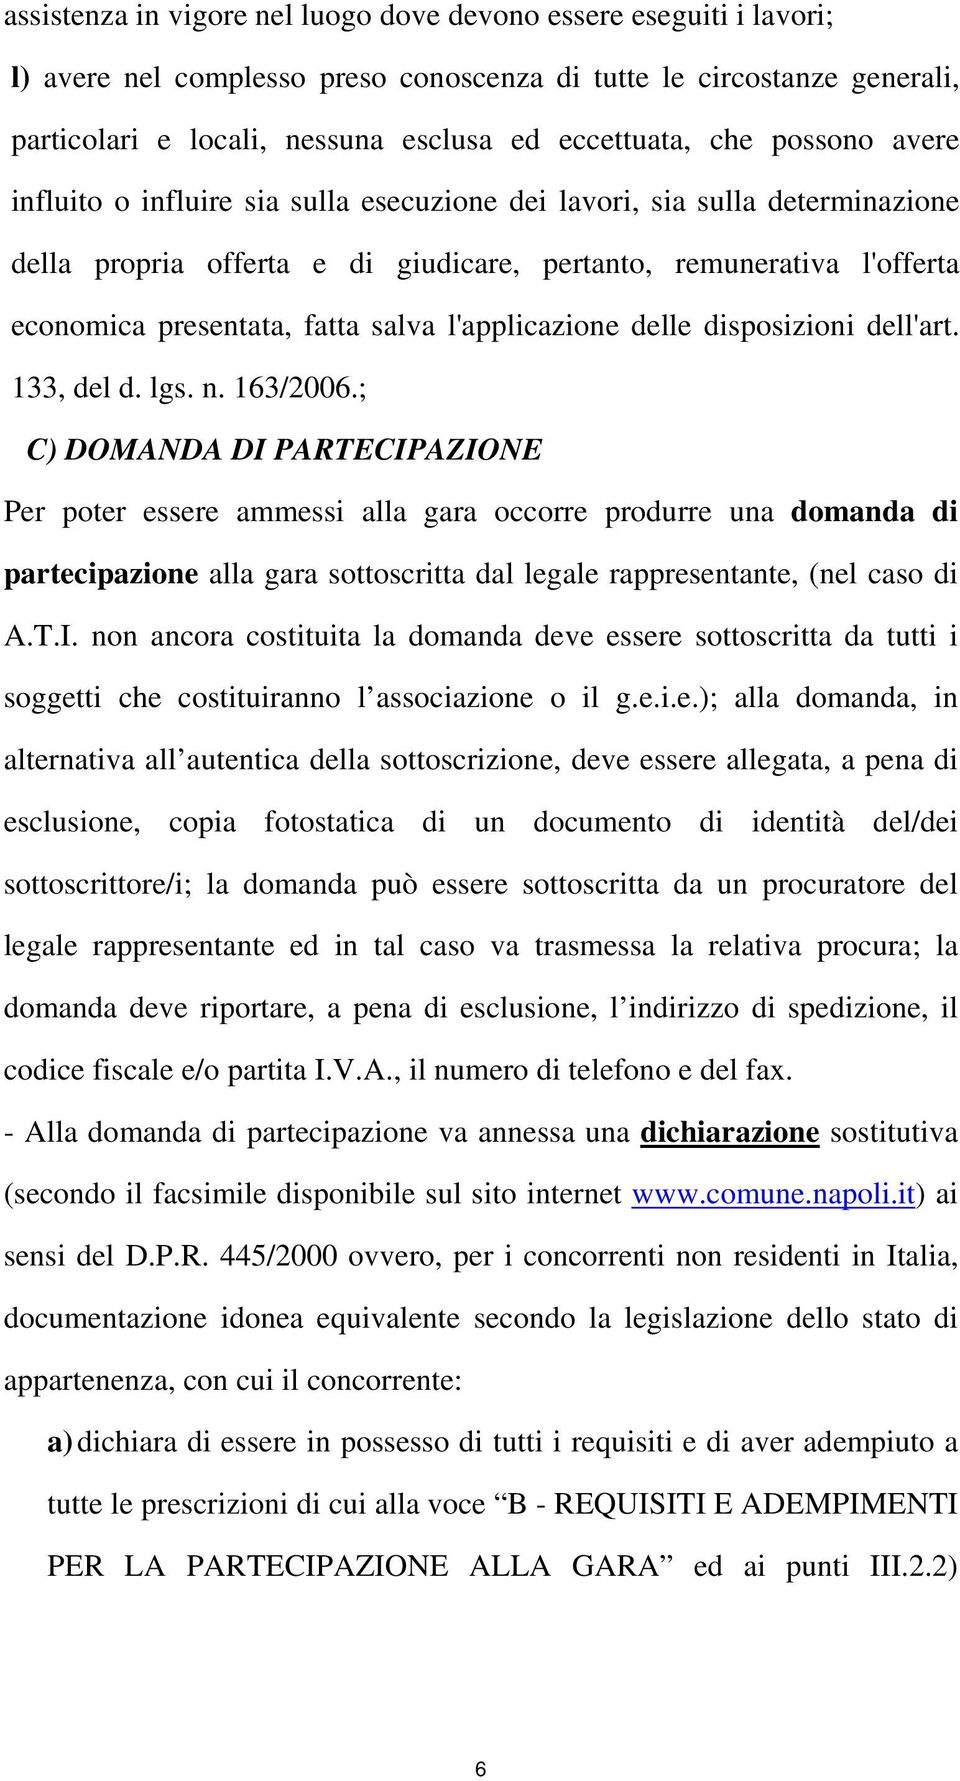 l'applicazione delle disposizioni dell'art. 133, del d. lgs. n. 163/2006.